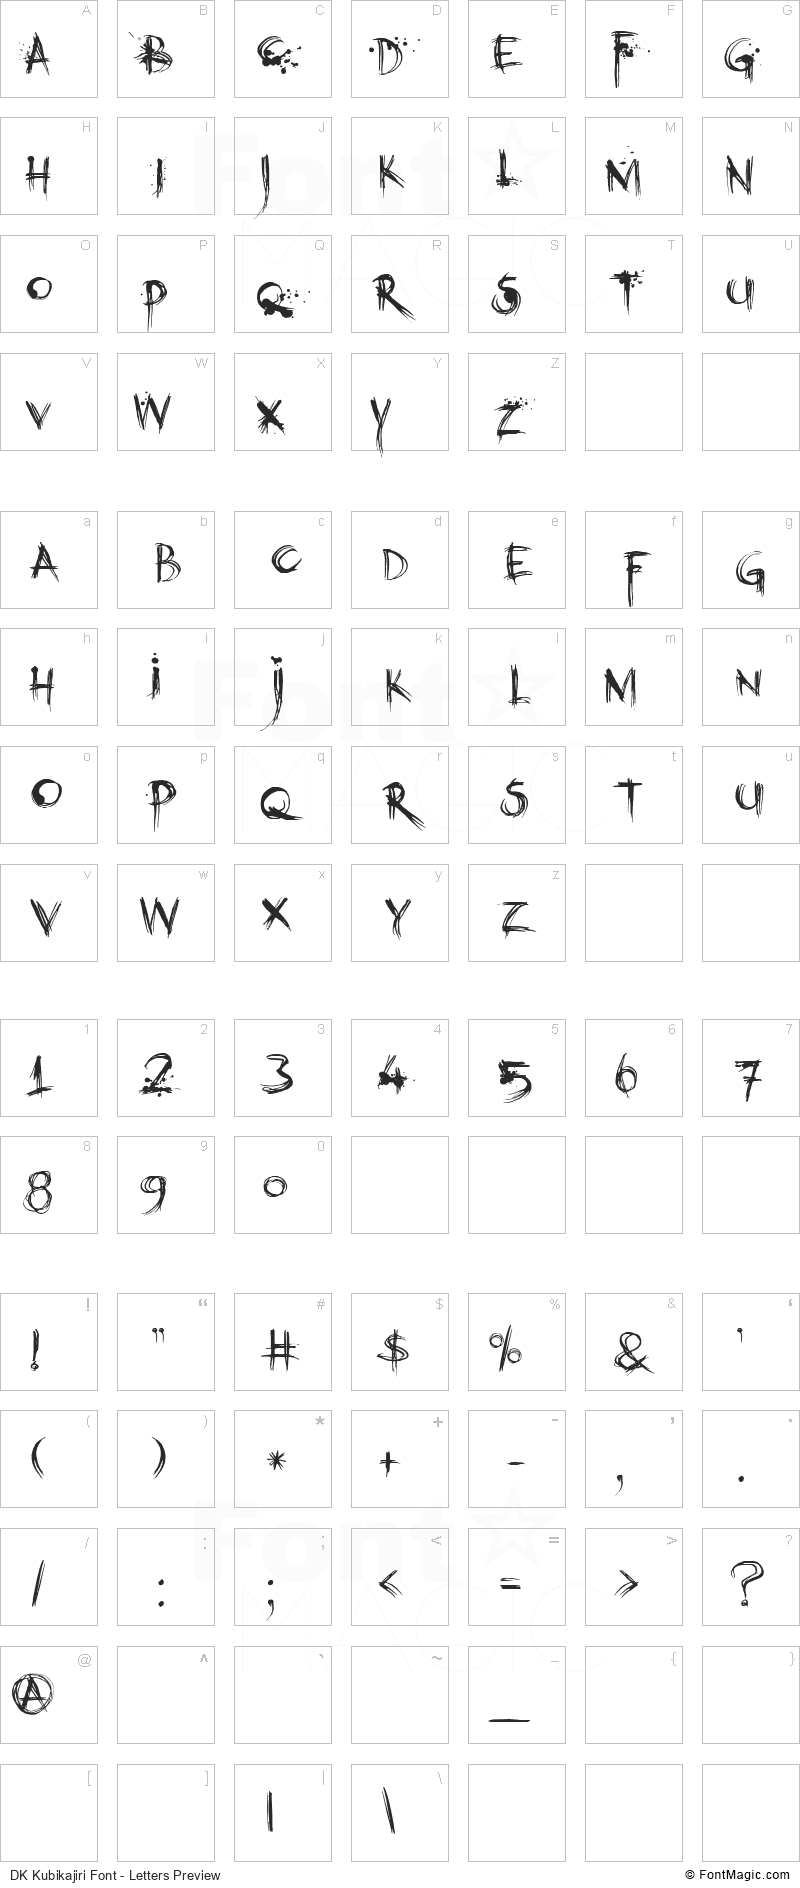 DK Kubikajiri Font - All Latters Preview Chart